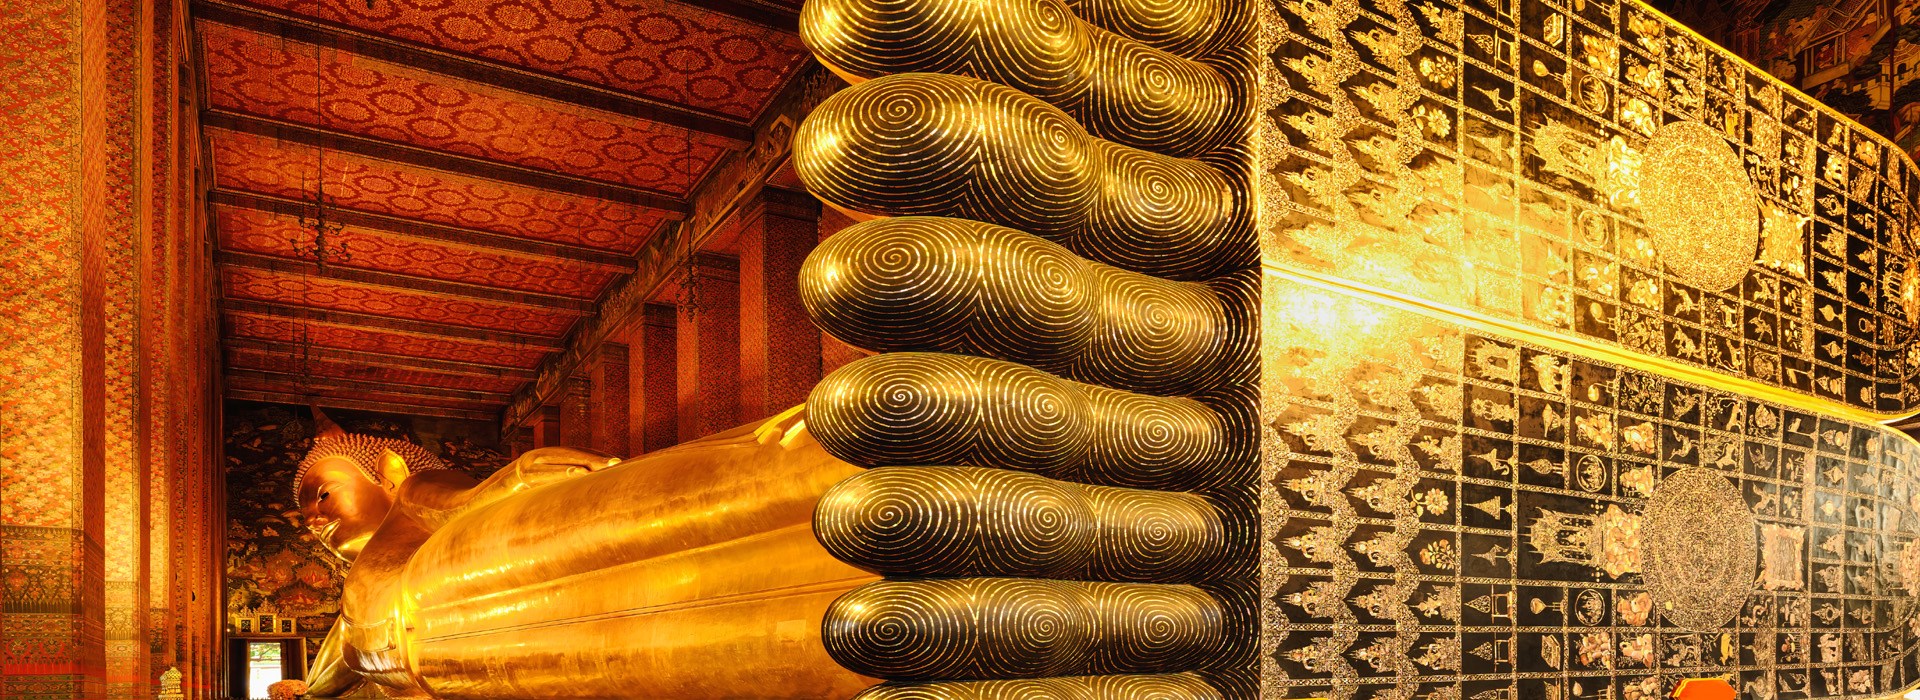 Visiter Wat Pho - Thaïlande